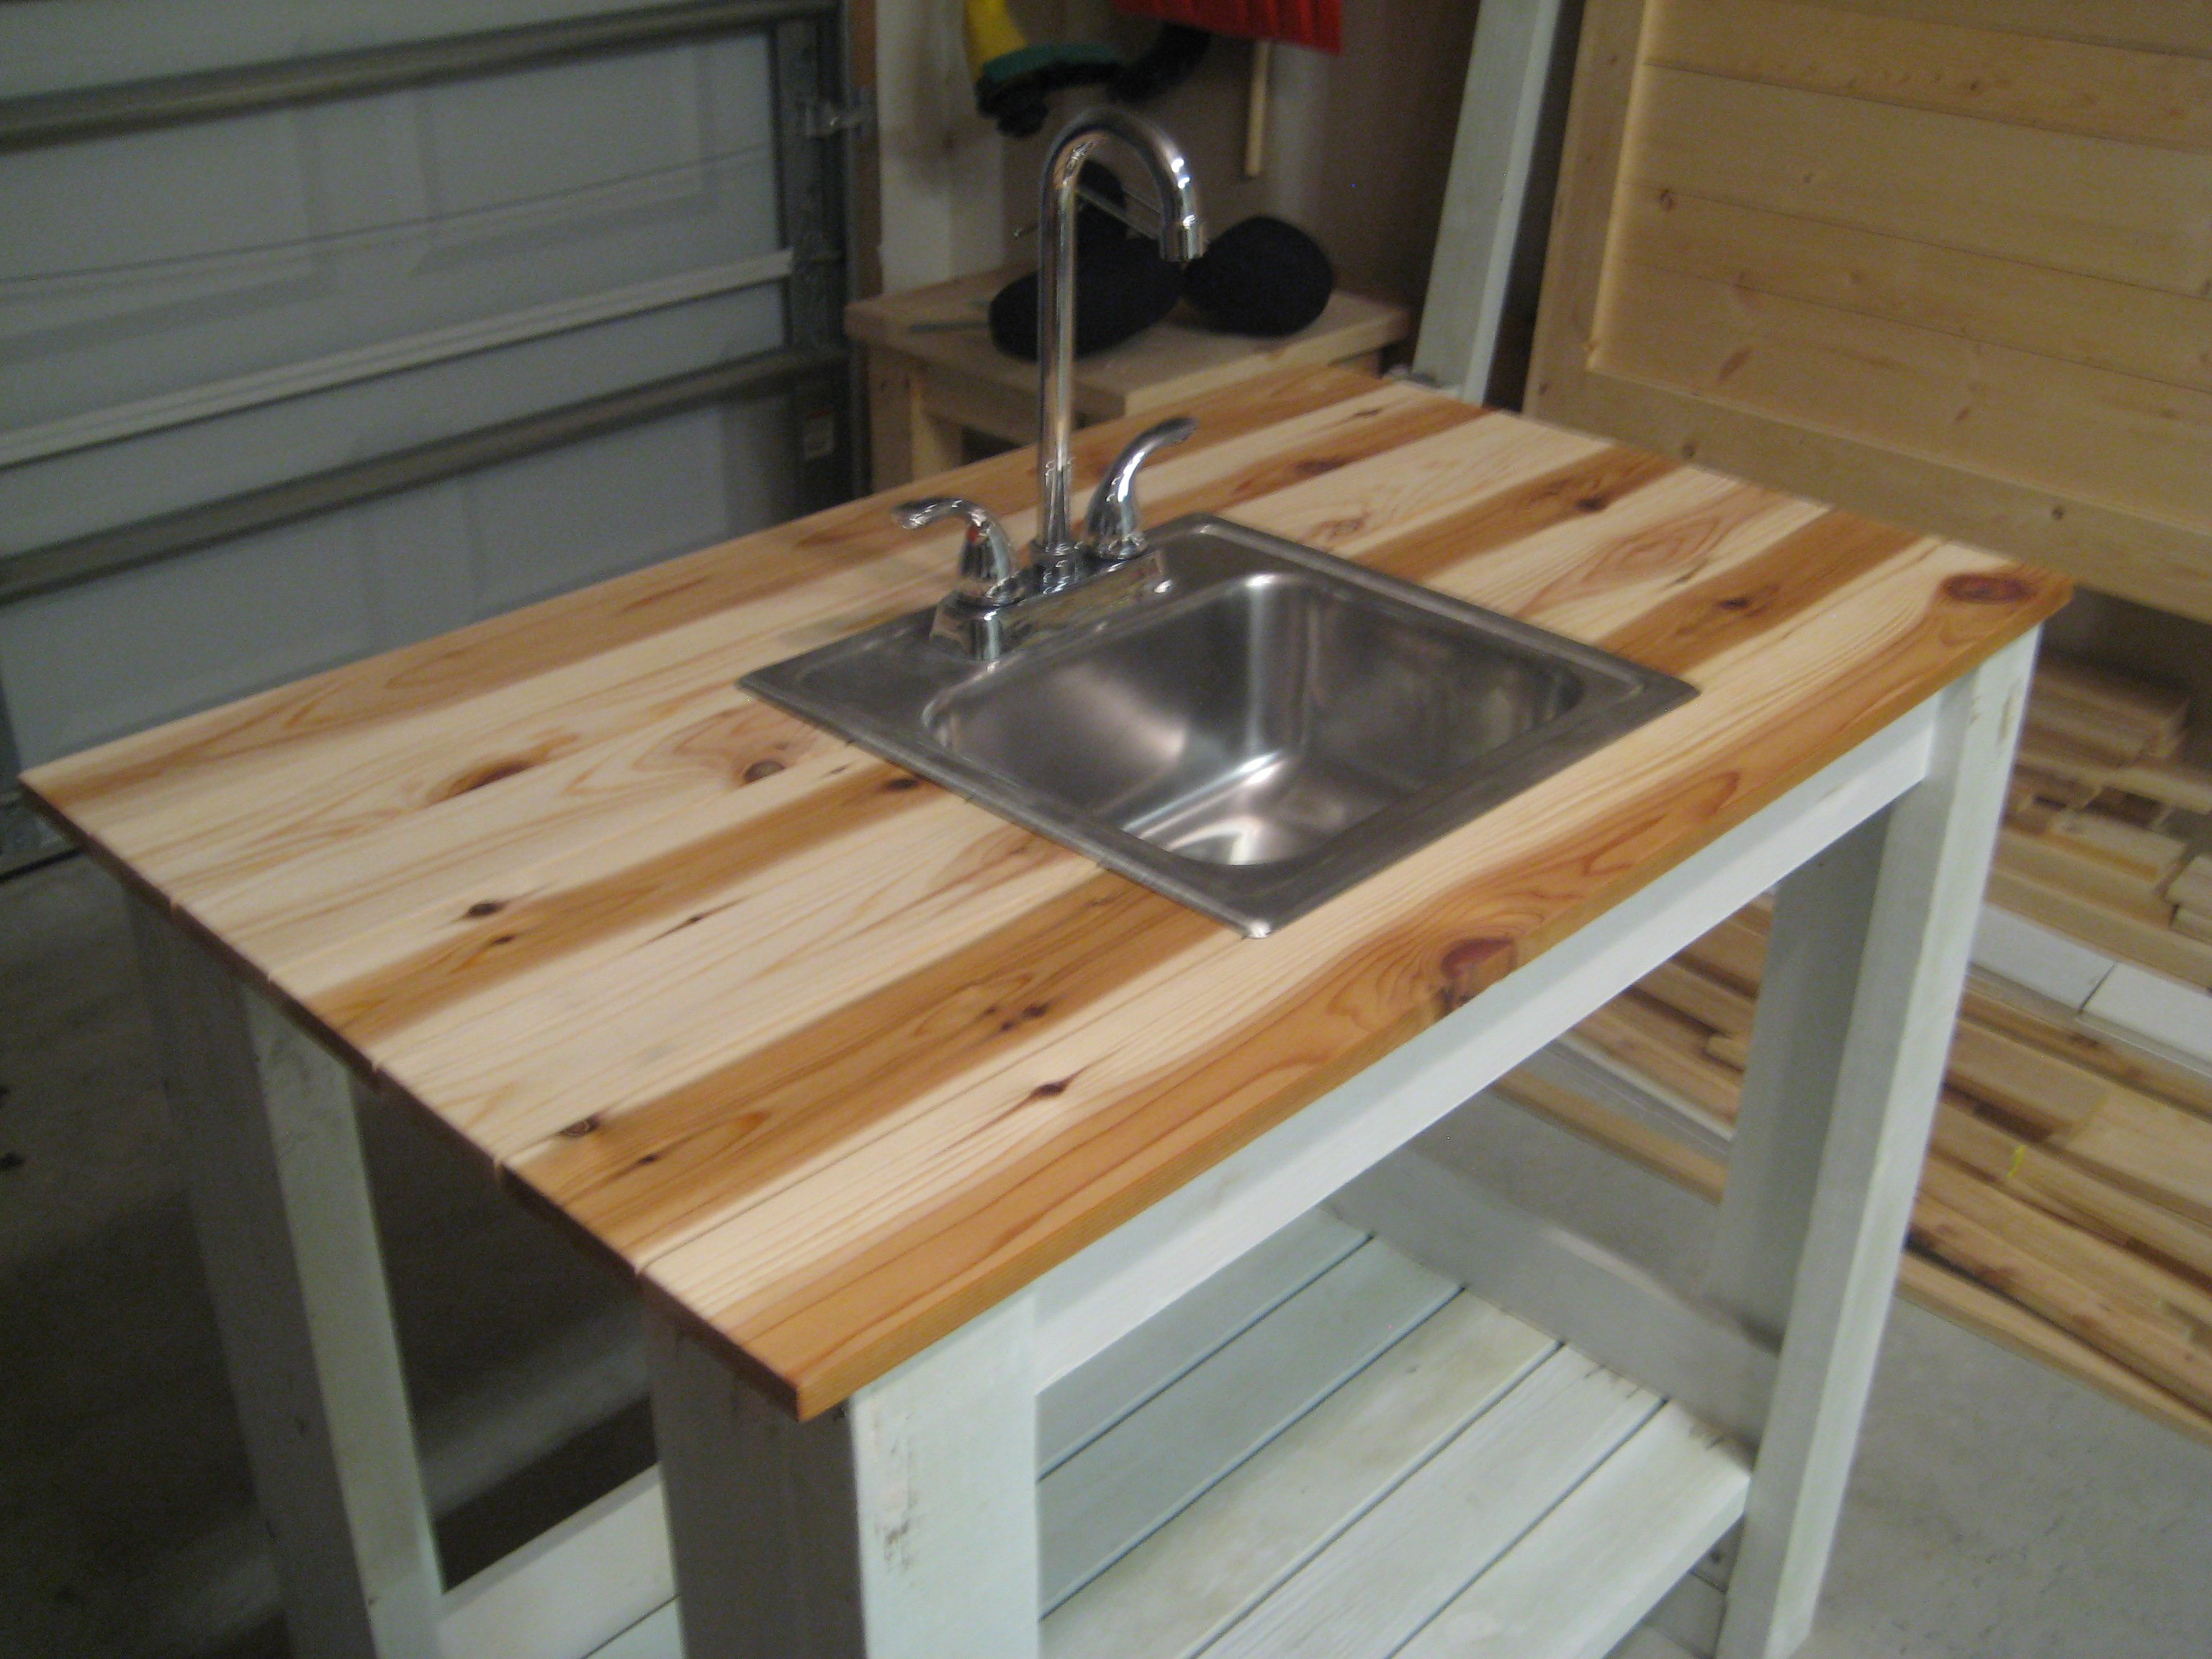 My Simple Outdoor Sink Ana White - Outdoor Kitchen Sink Ideas Diy